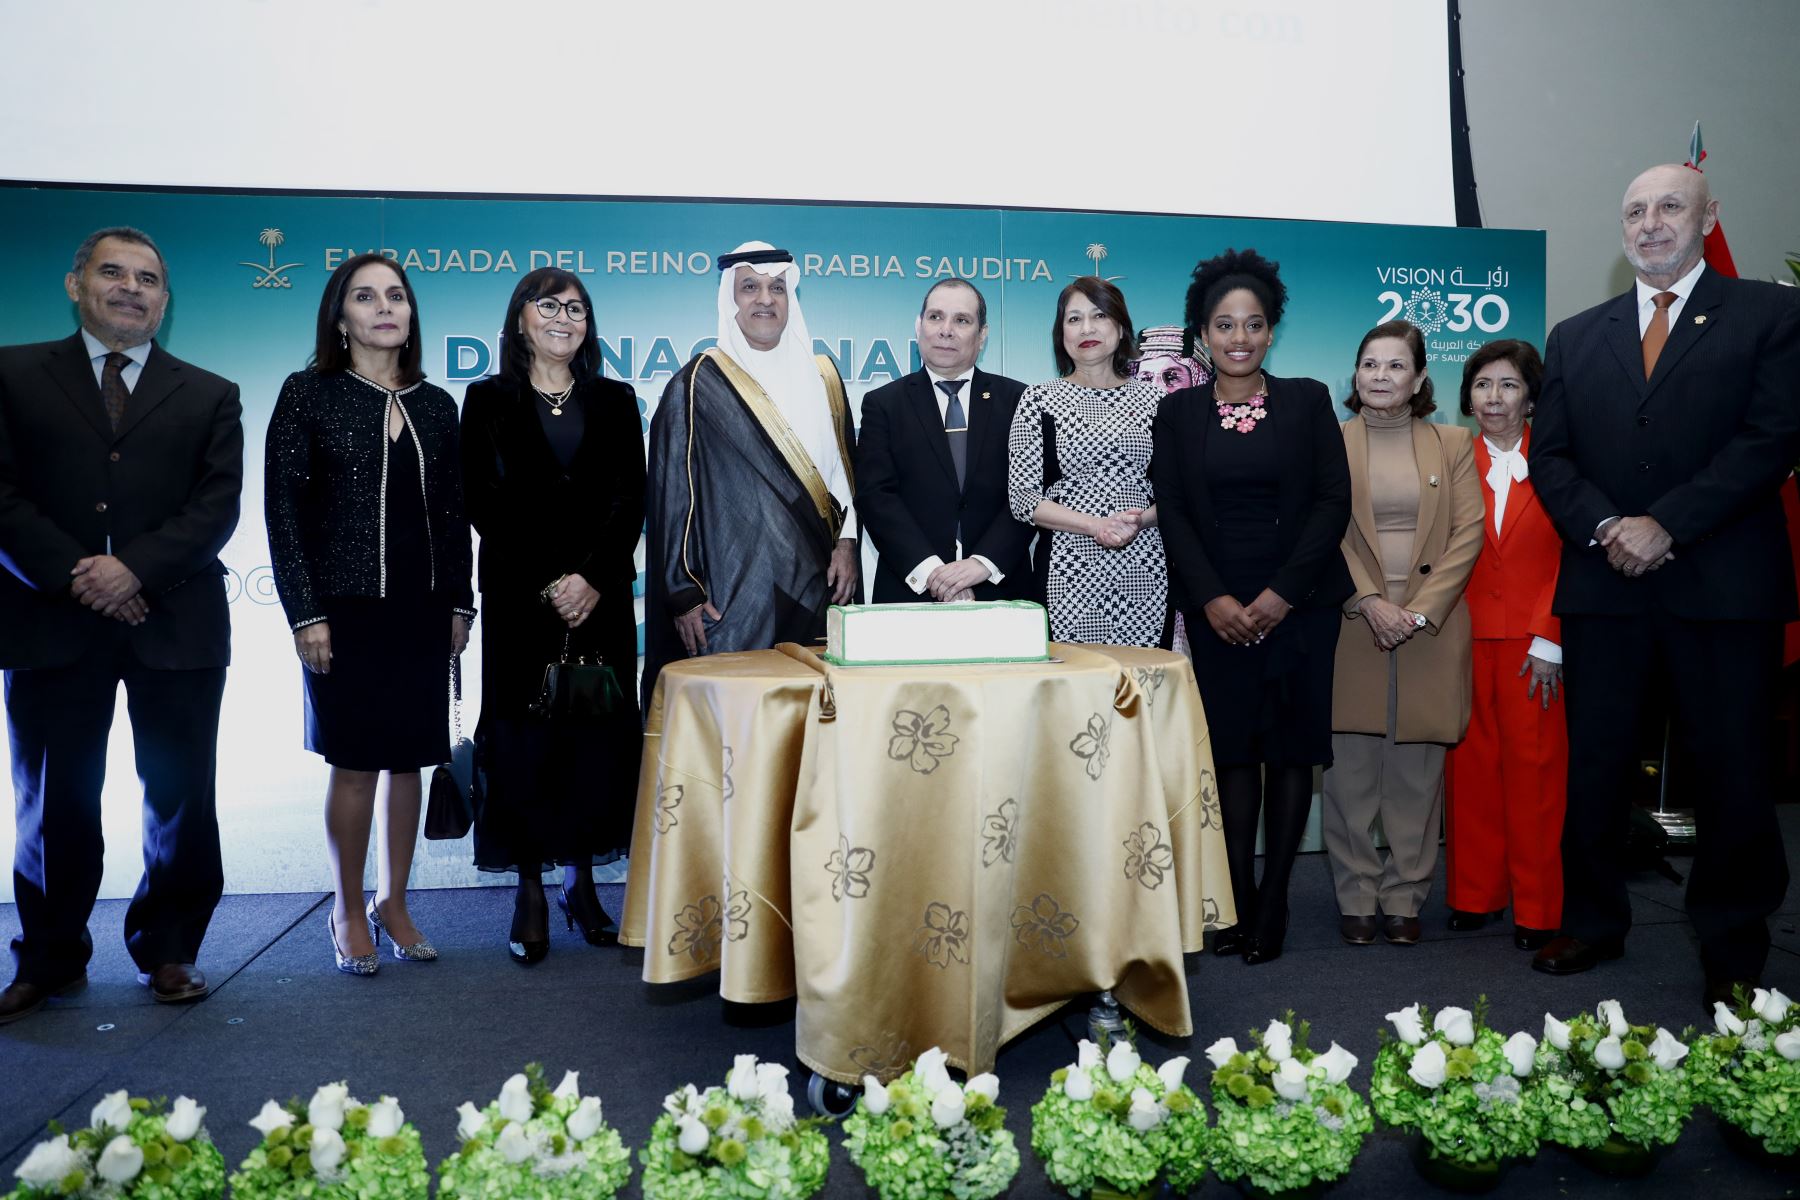 Ministros de Estado, embajadores y congresistas de la República participaron en la ceremonia especial por el Día Nacional de Arabia Saudita. Foto: ANDINA/Daniel Bracamonte